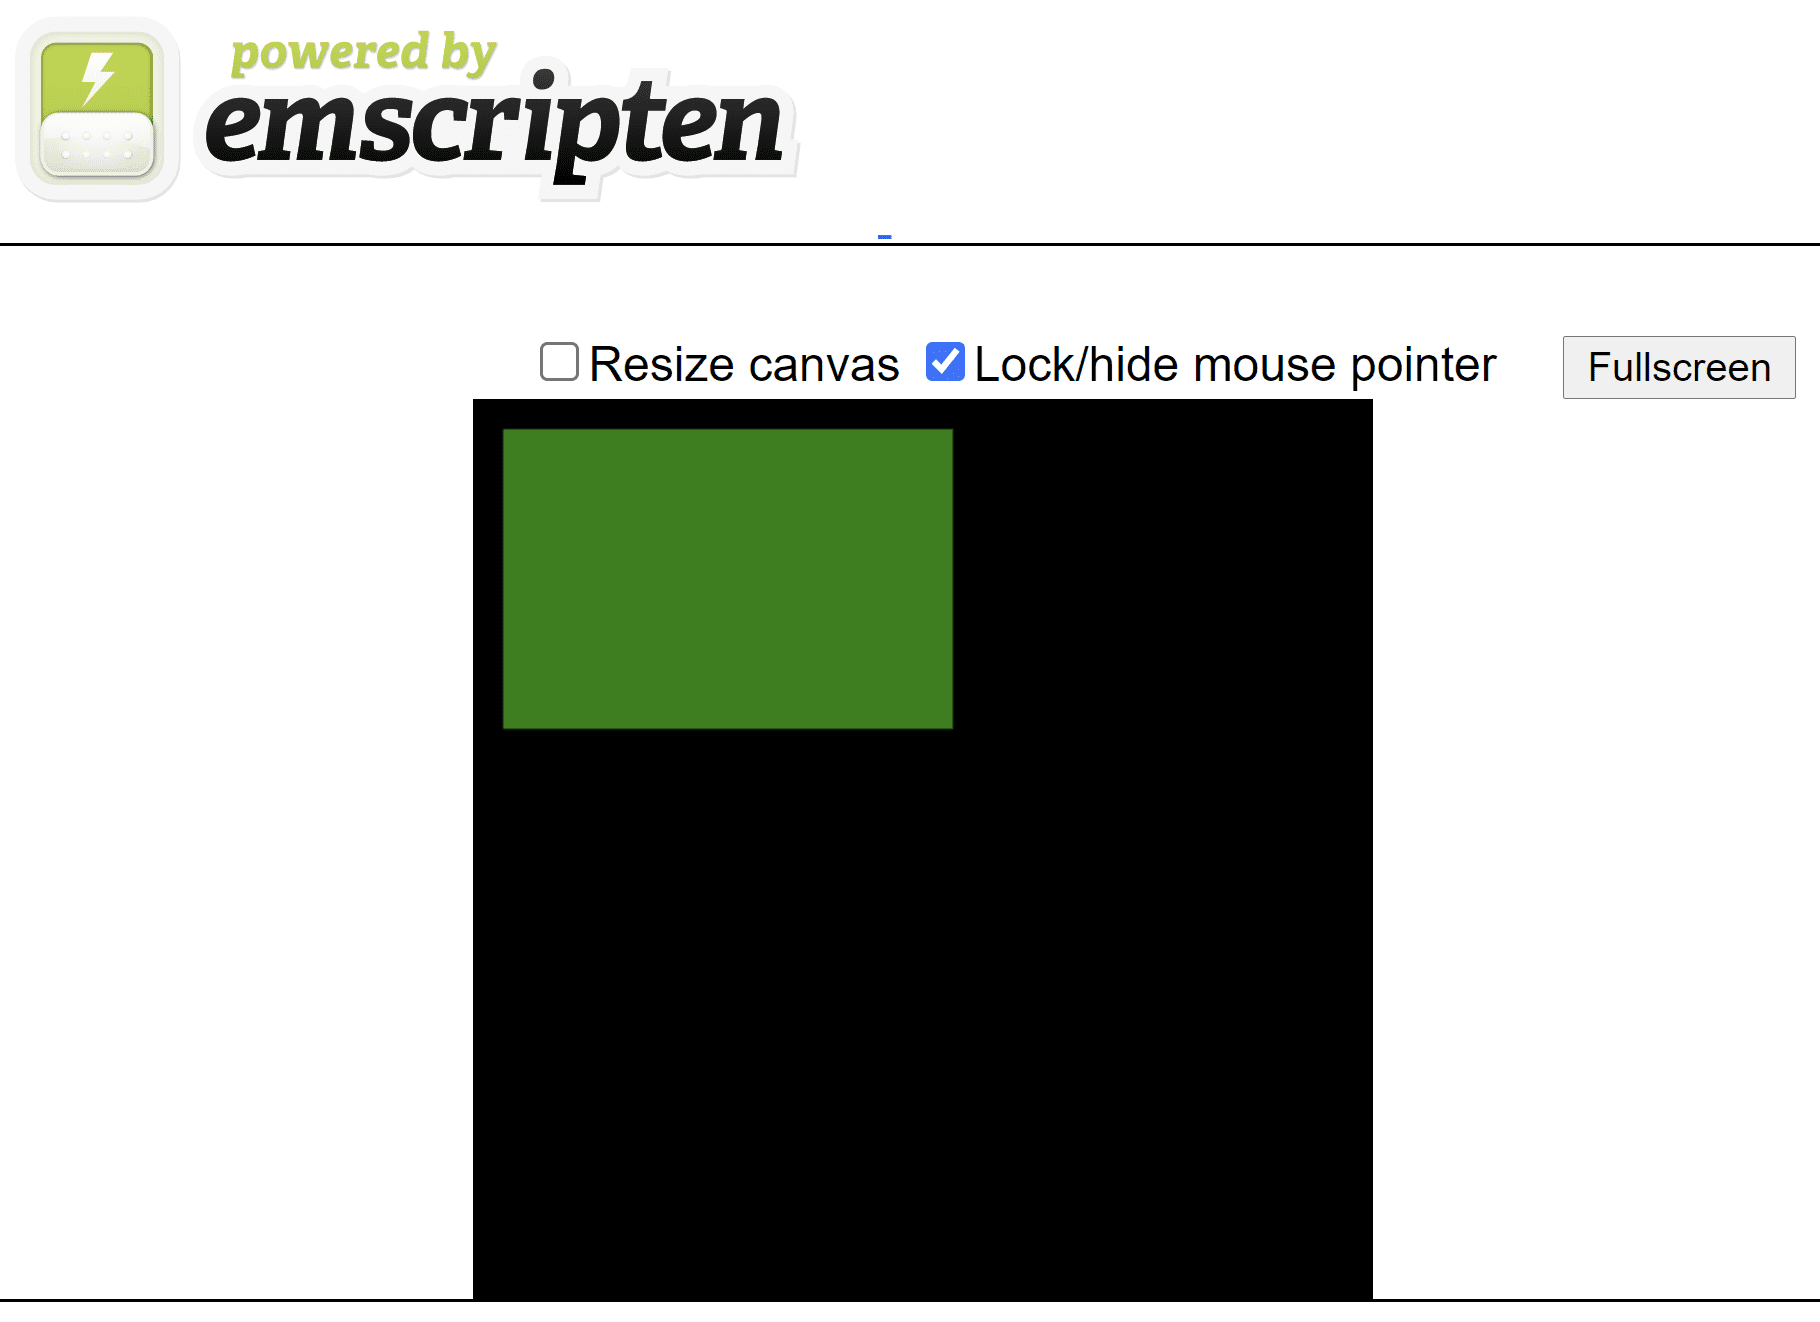 由脚本生成的 HTML 网页，显示了黑色方形画布上的绿色矩形。